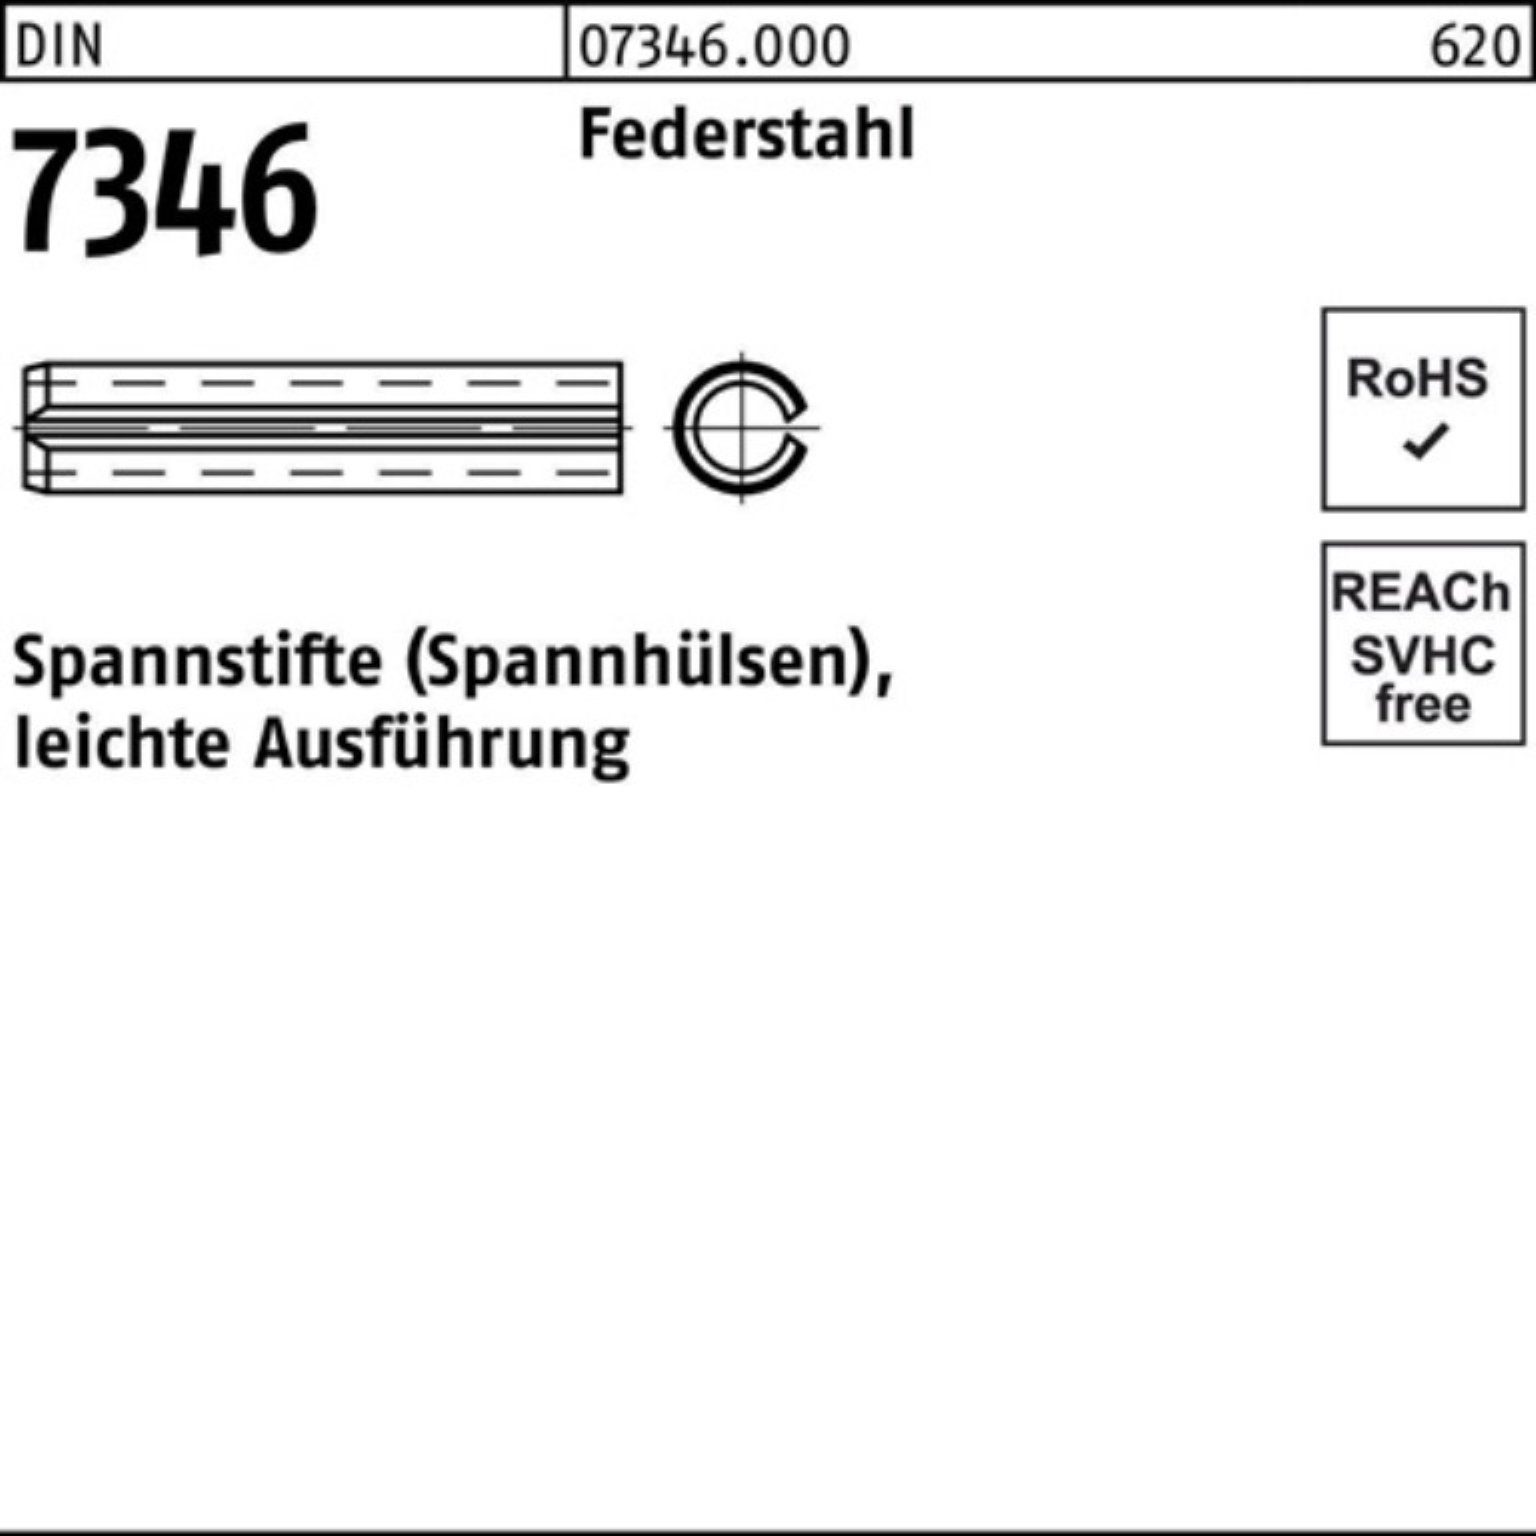 Reyher Spannstift 100er Pack Spannstift Federstahl 50 12x 7346/ISO Aus leichte 13337 DIN